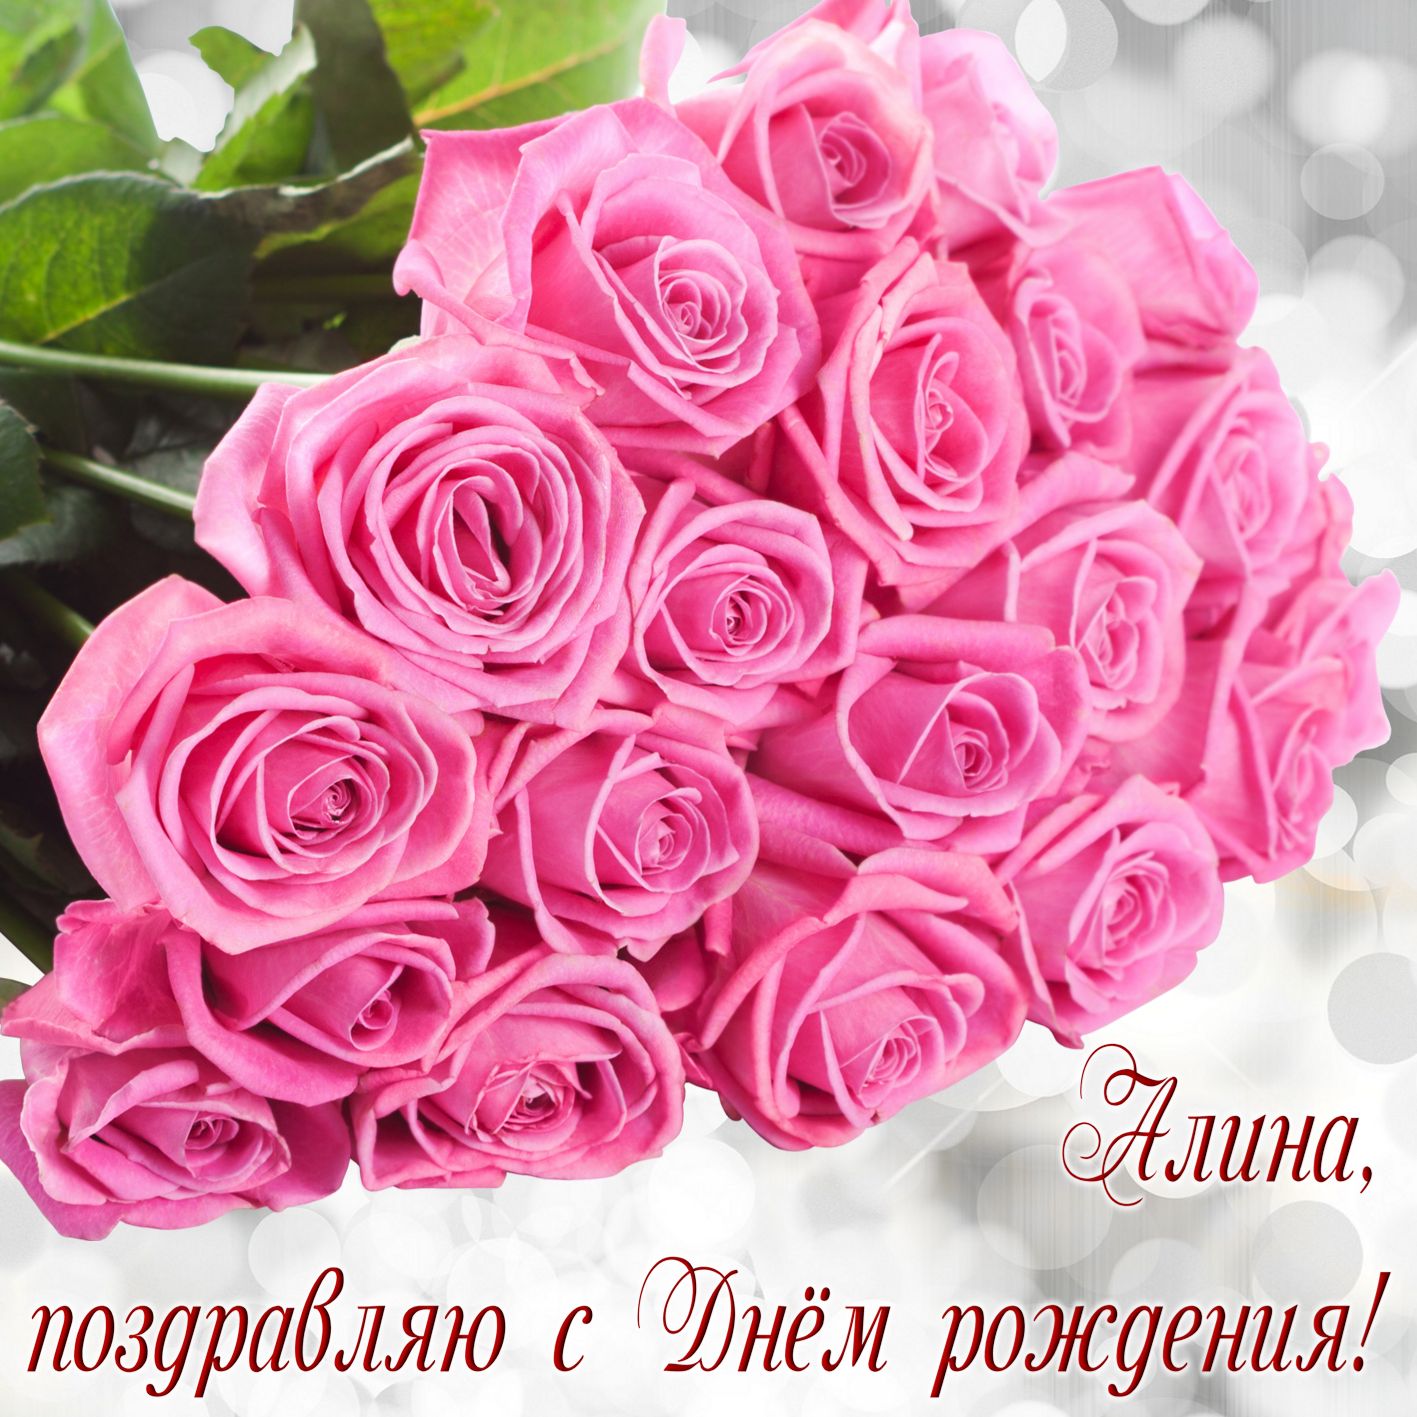 Огромный букет розовых роз на День рождения